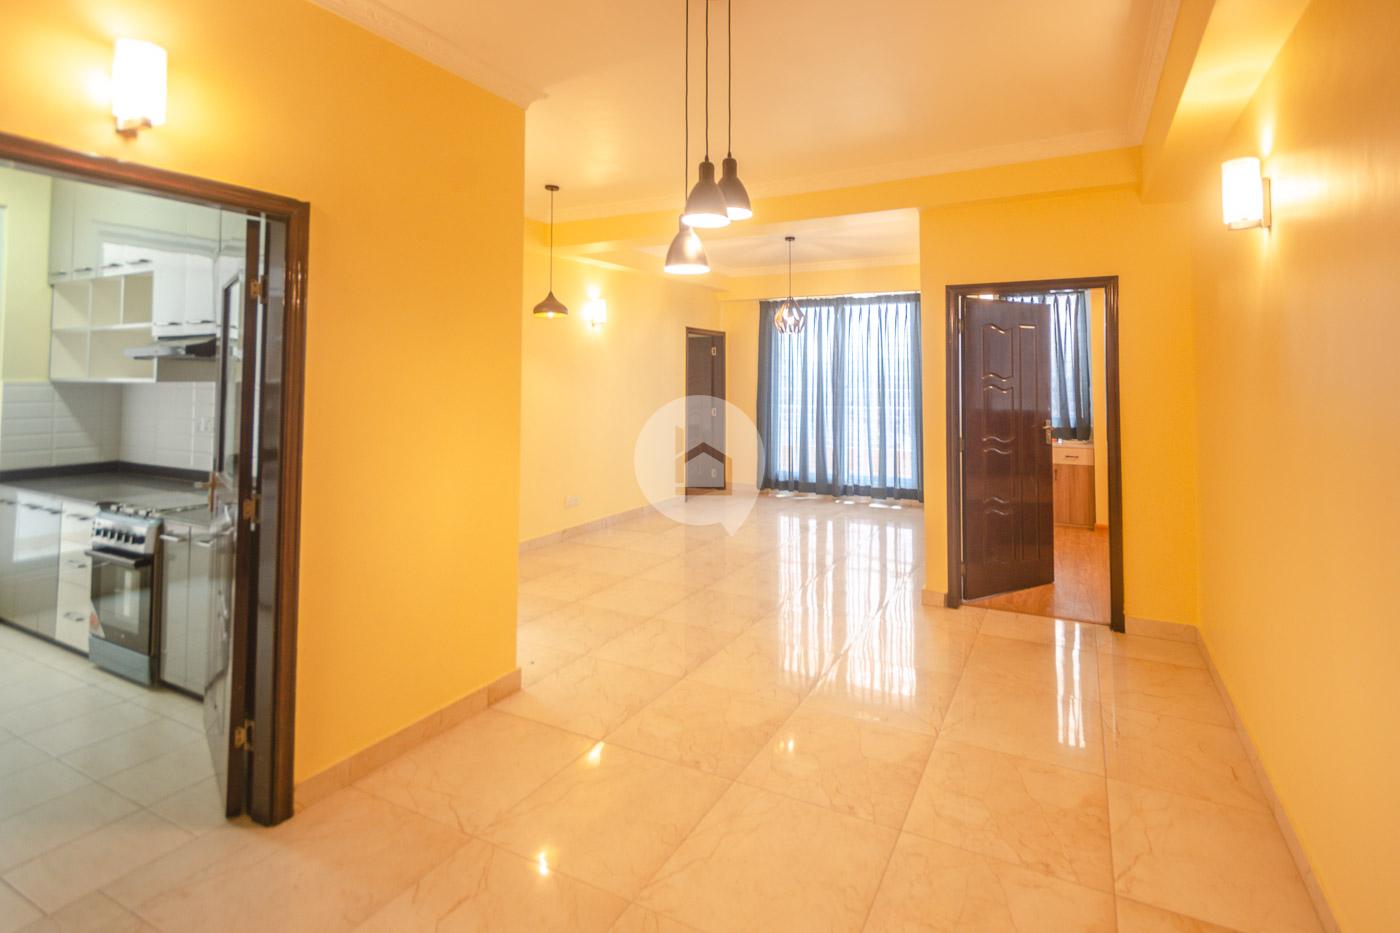 3BHK Westar Apartment : Apartment for Sale in Balkumari, Lalitpur Image 6